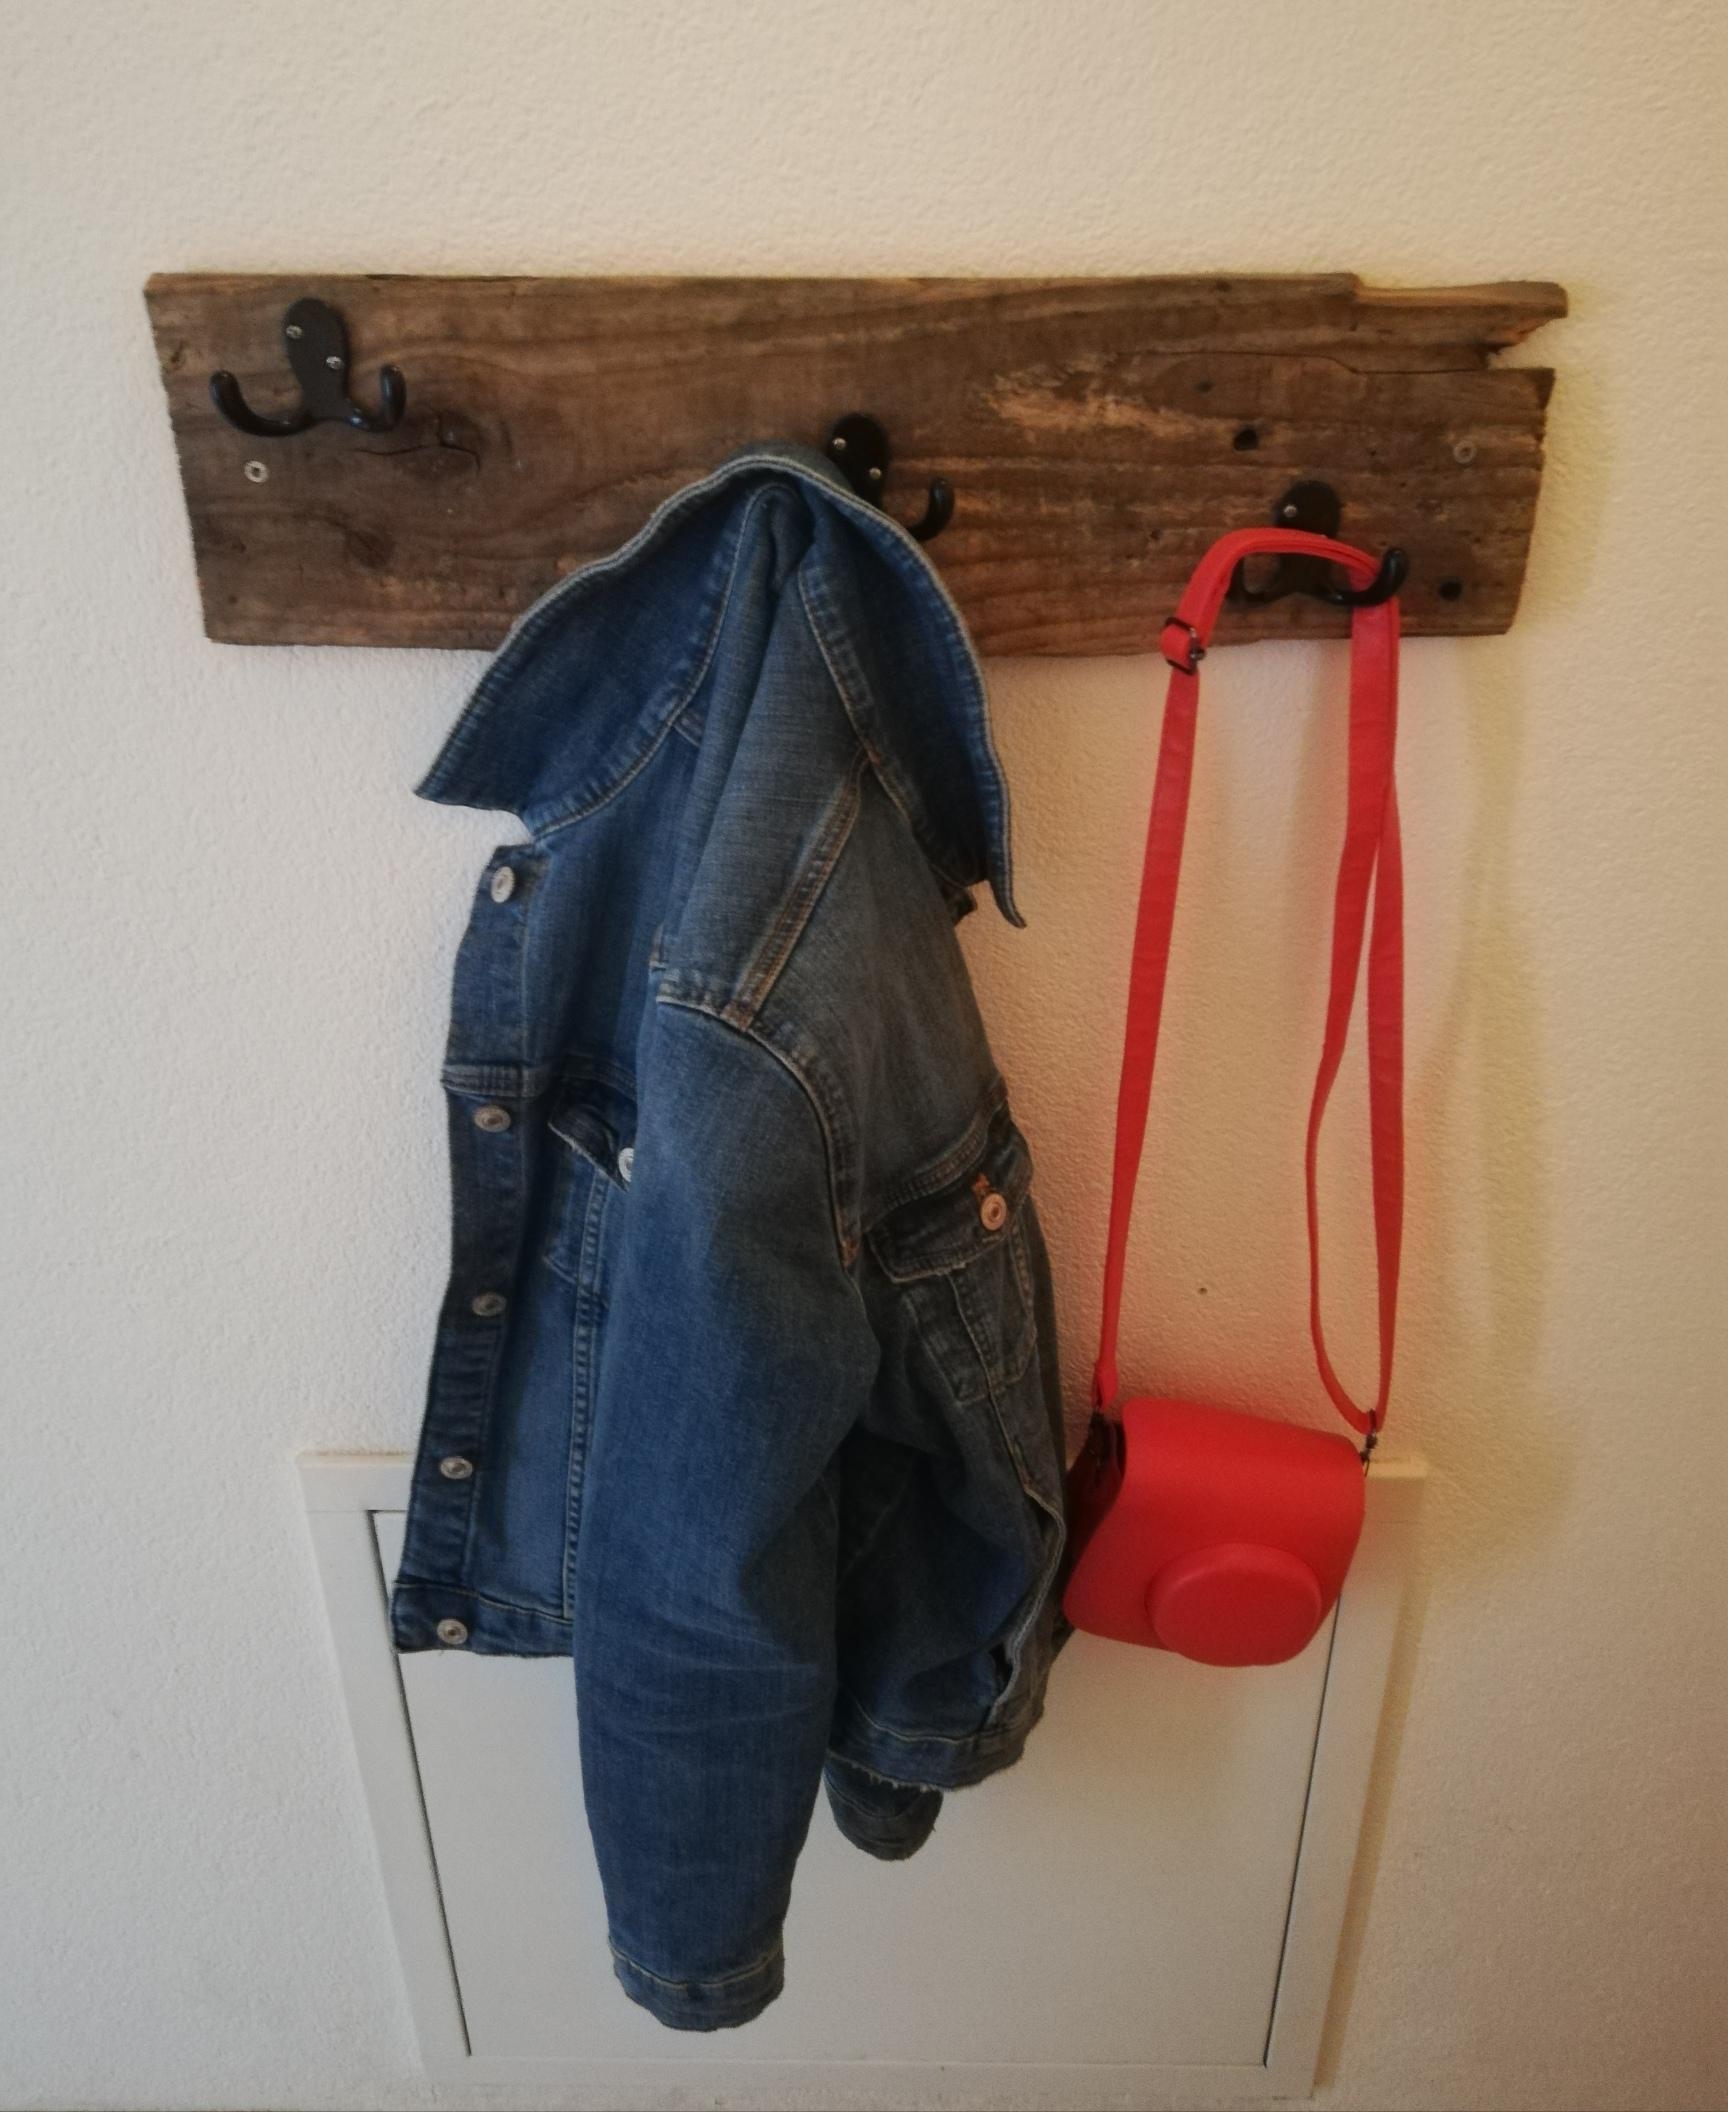 Einfach ein altes Holzbrett nehmen, ein paar Haken drauf und schon ist die Garderobe fertig😉
#garderobe#livingchallenge